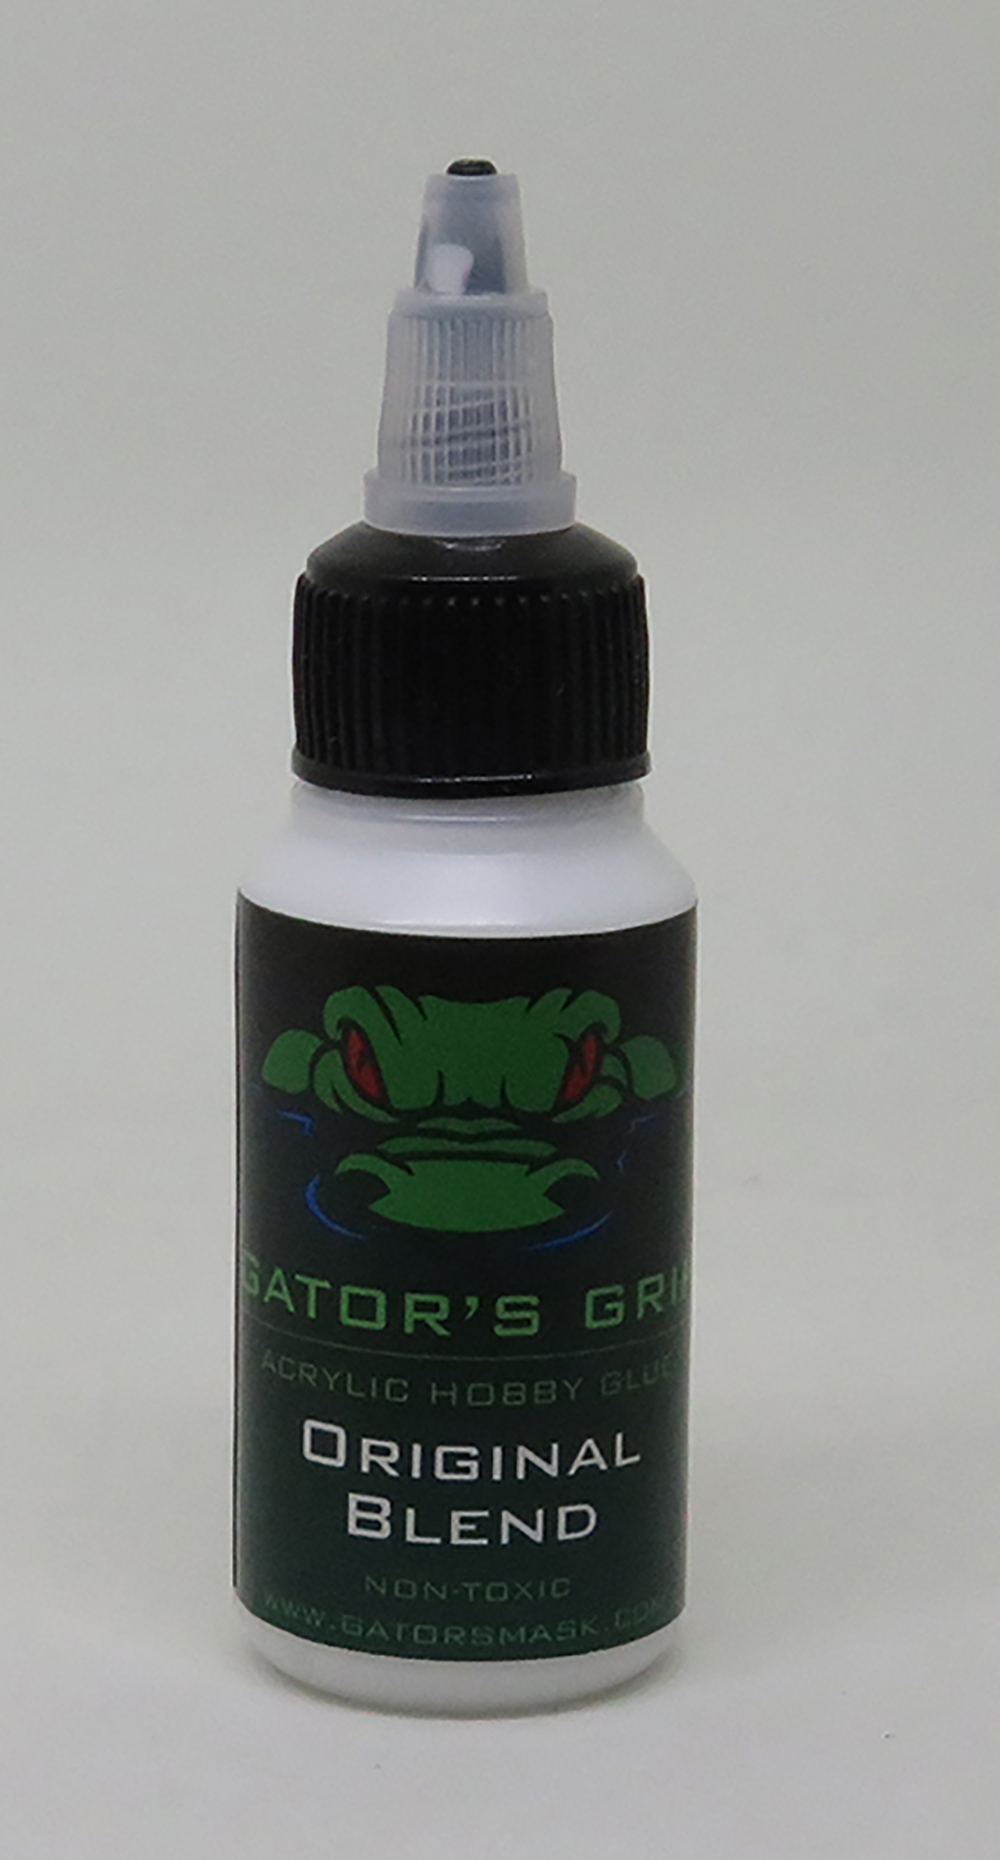 Gator's Grip Acrylic Hobby Glue